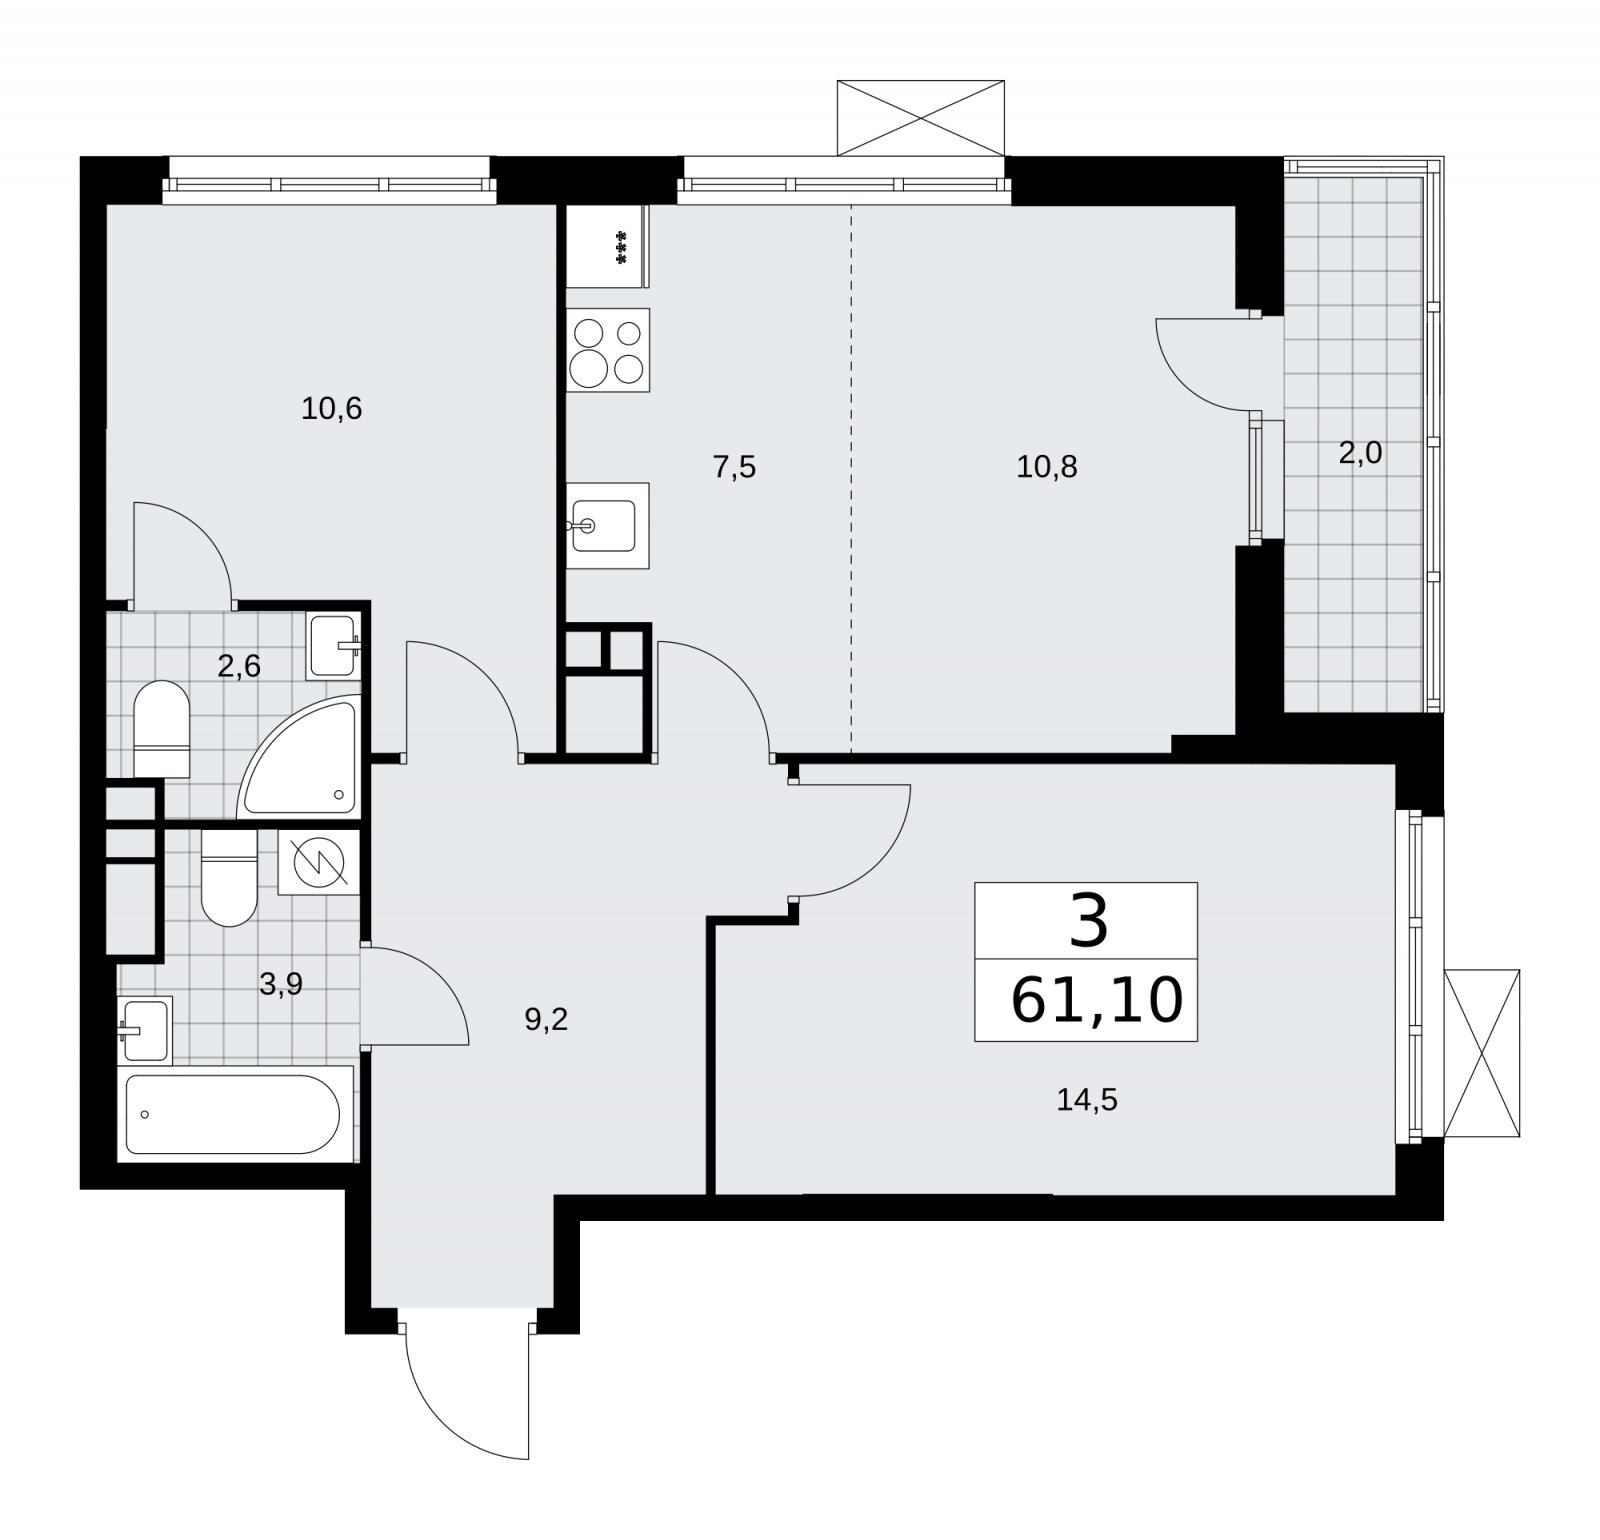 Продается просторная трехкомнатная квартира с европланировкой в новом ЖК, метро рядом